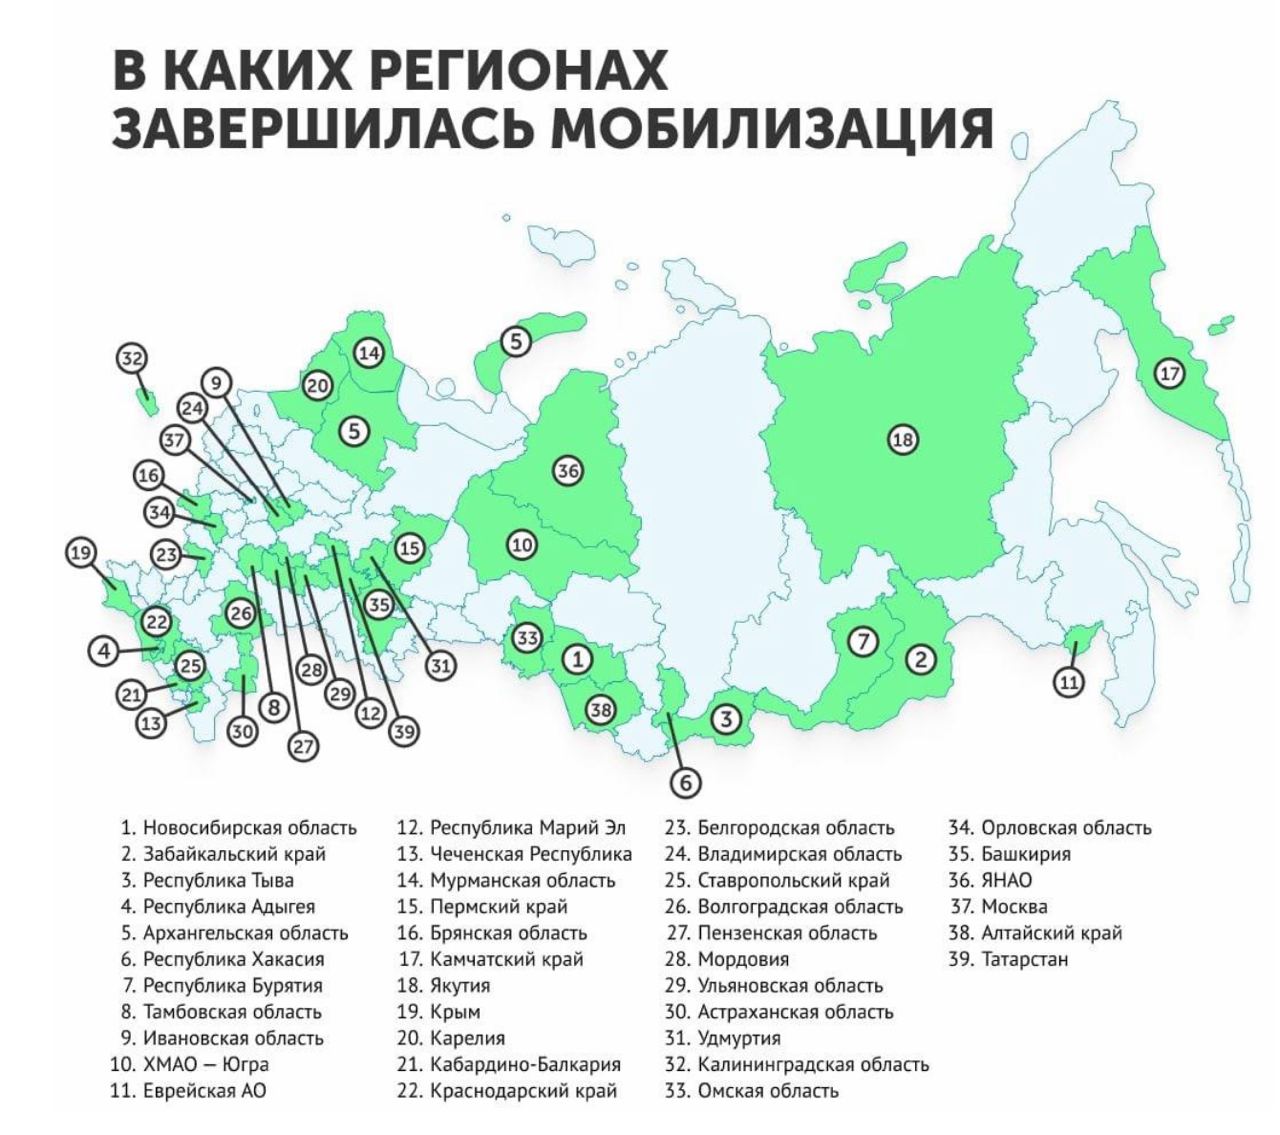 Когда начинается новая мобилизация в россии 2024. Мобилизация по регионам России. Карта России с регионами. Количество мобилизированных по регионам. Регионы по мобилизации в РФ 2022.